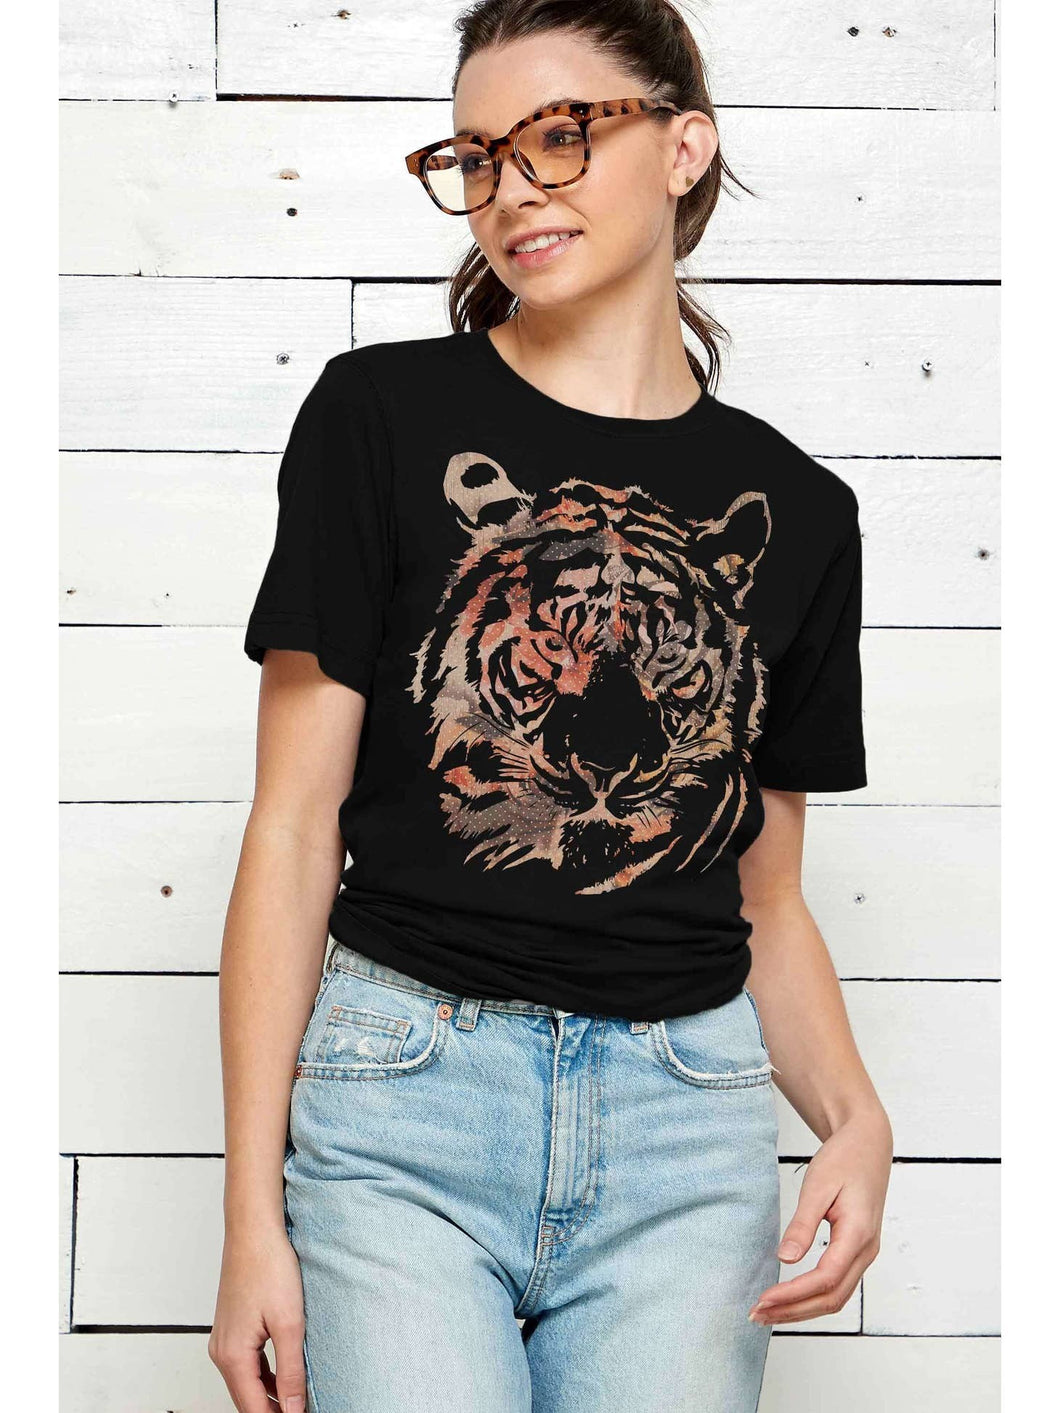 ProTrend Black Tiger T-Shirt